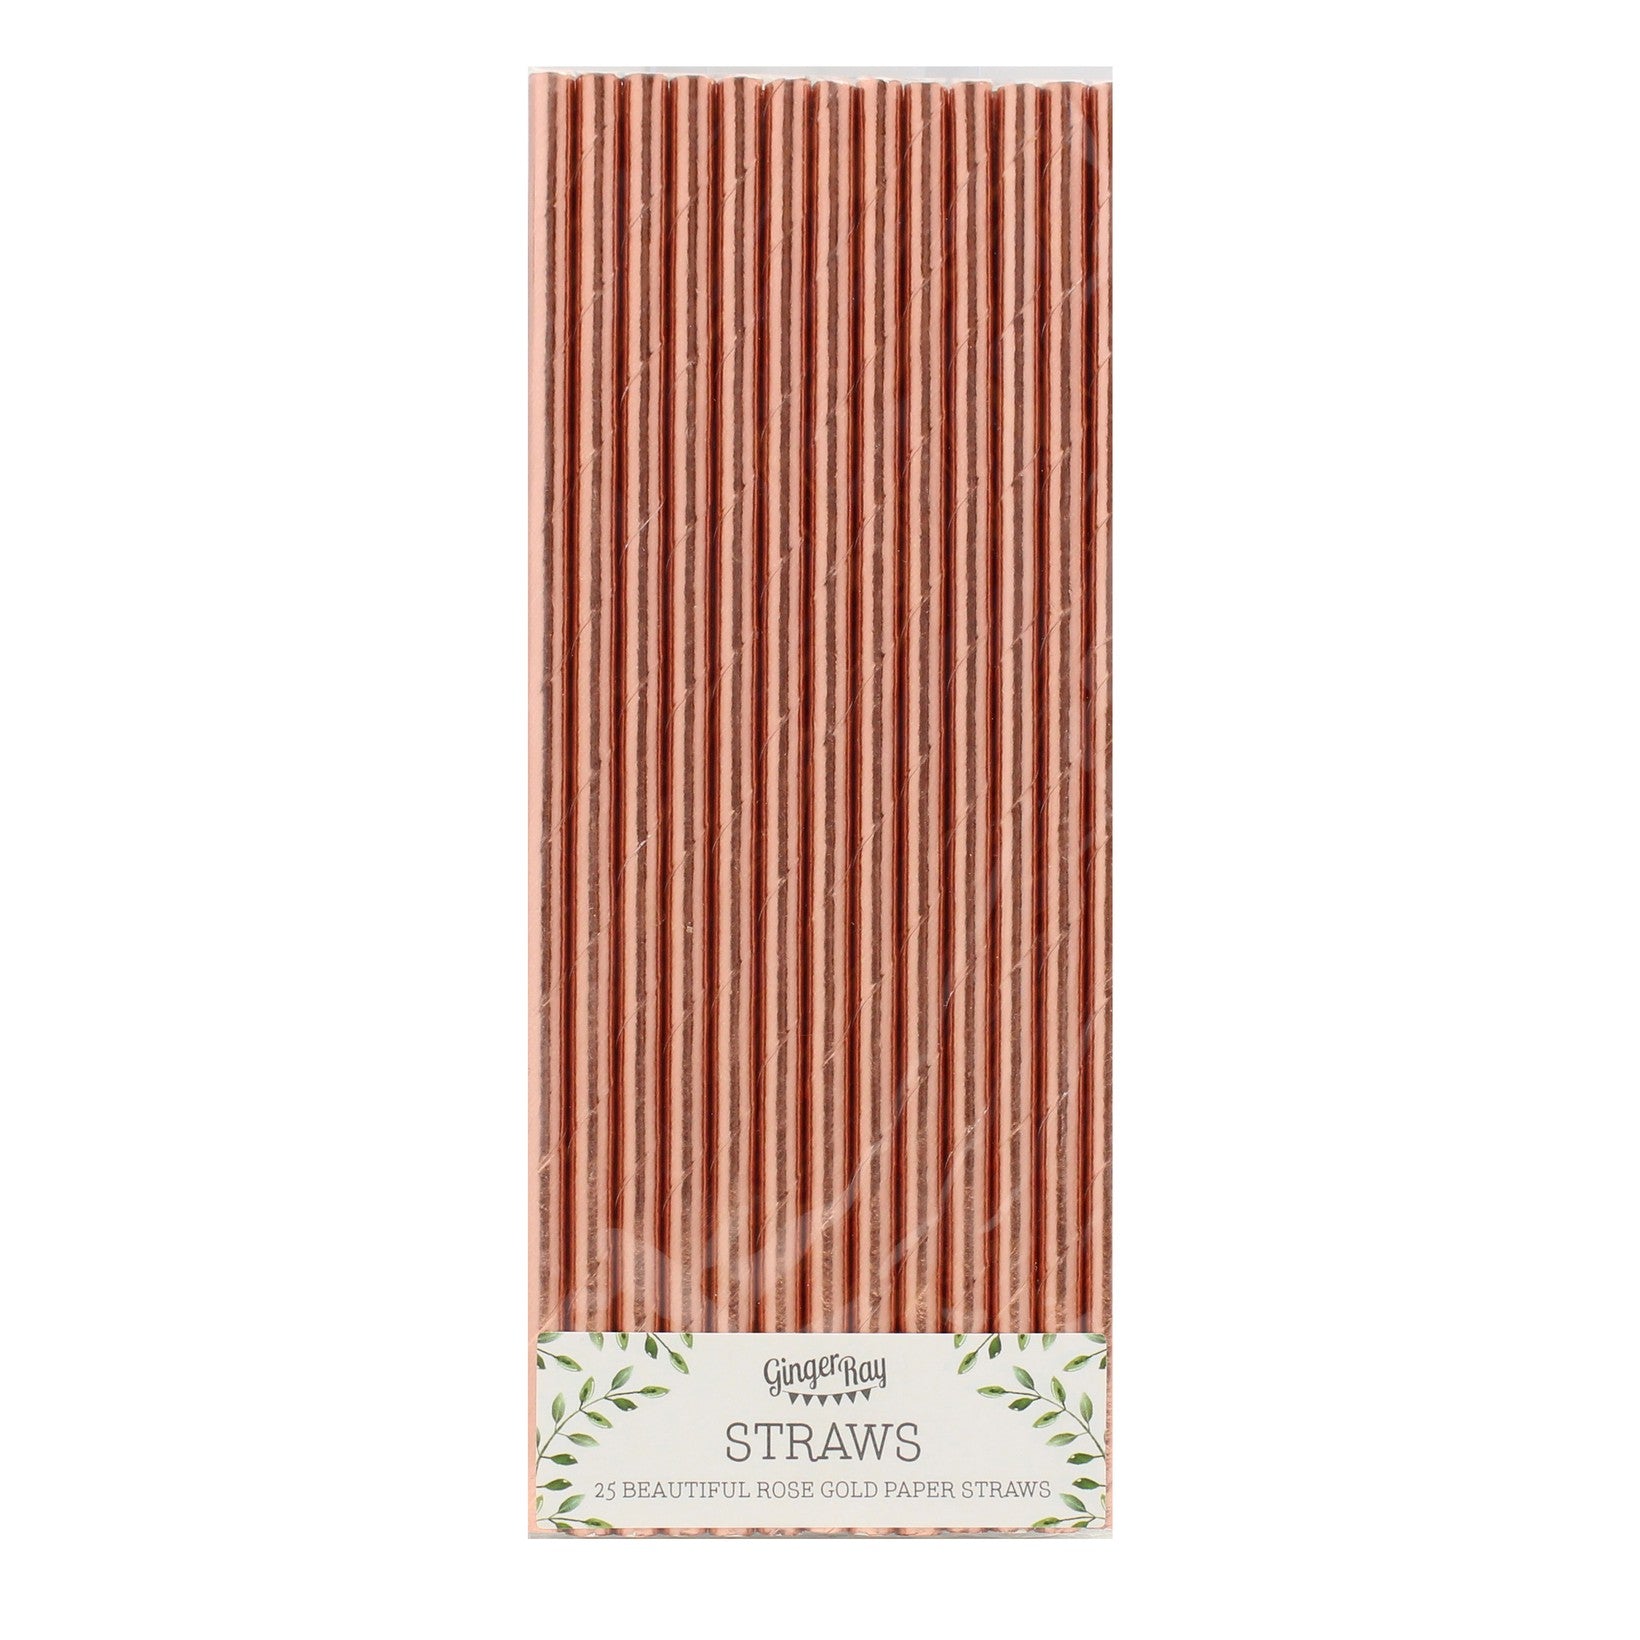 Copper-colored straw 25 pcs